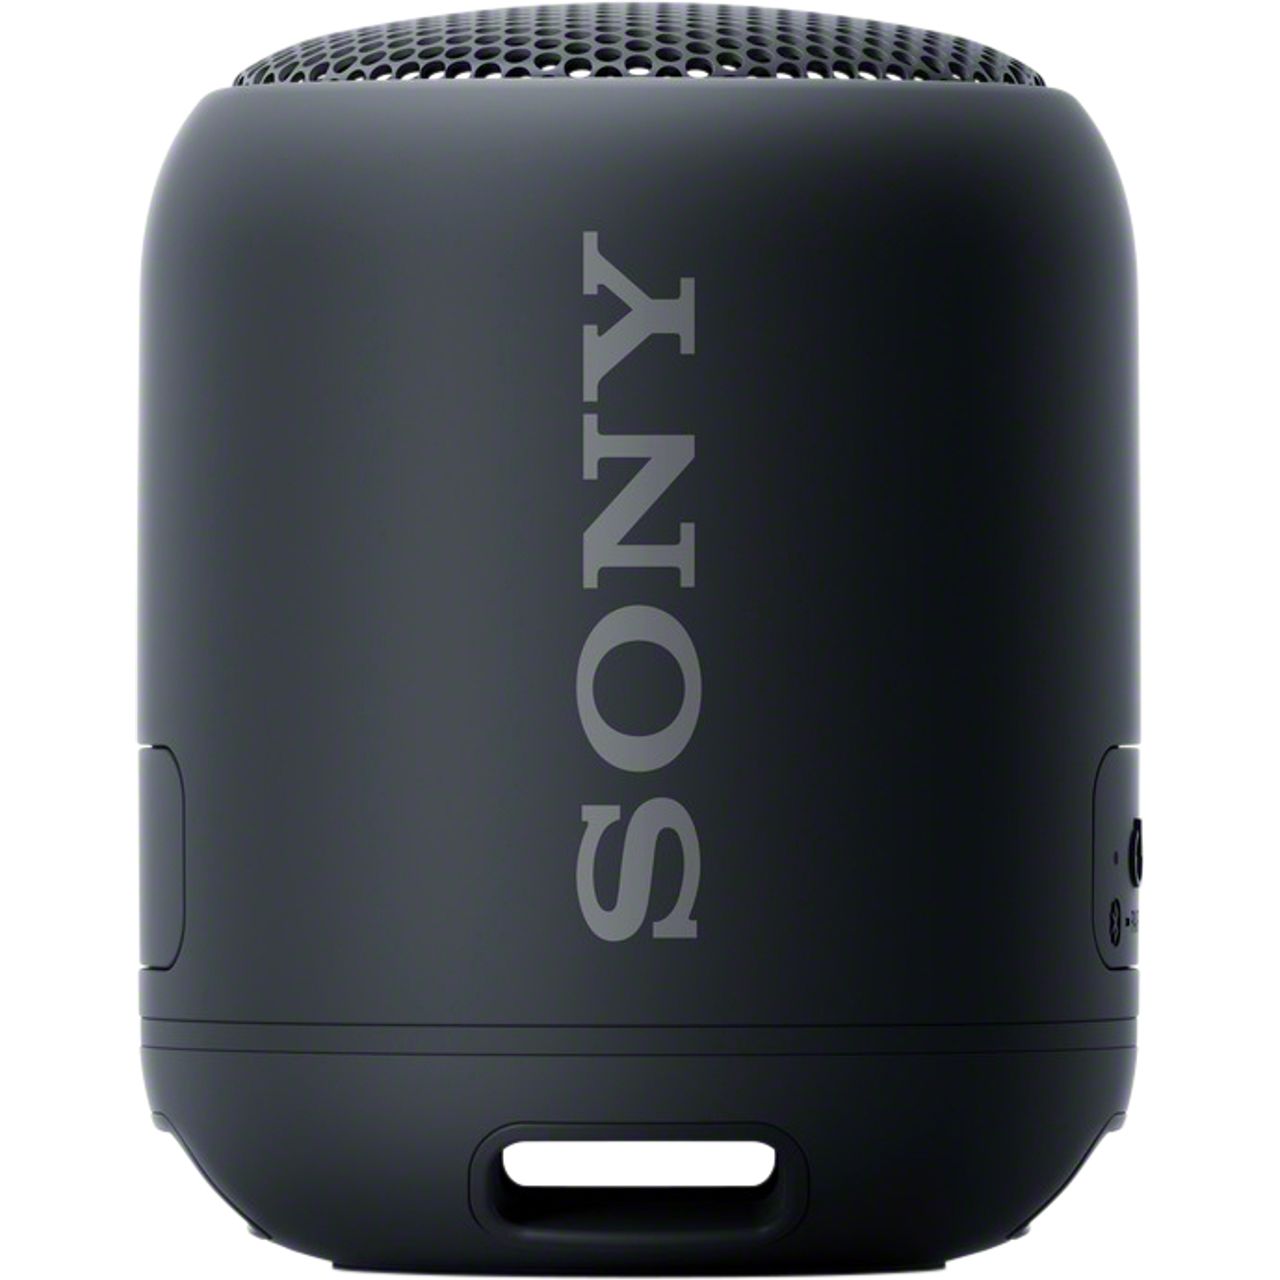 Sony SRS-XB12 Compact Wireless Speaker specs